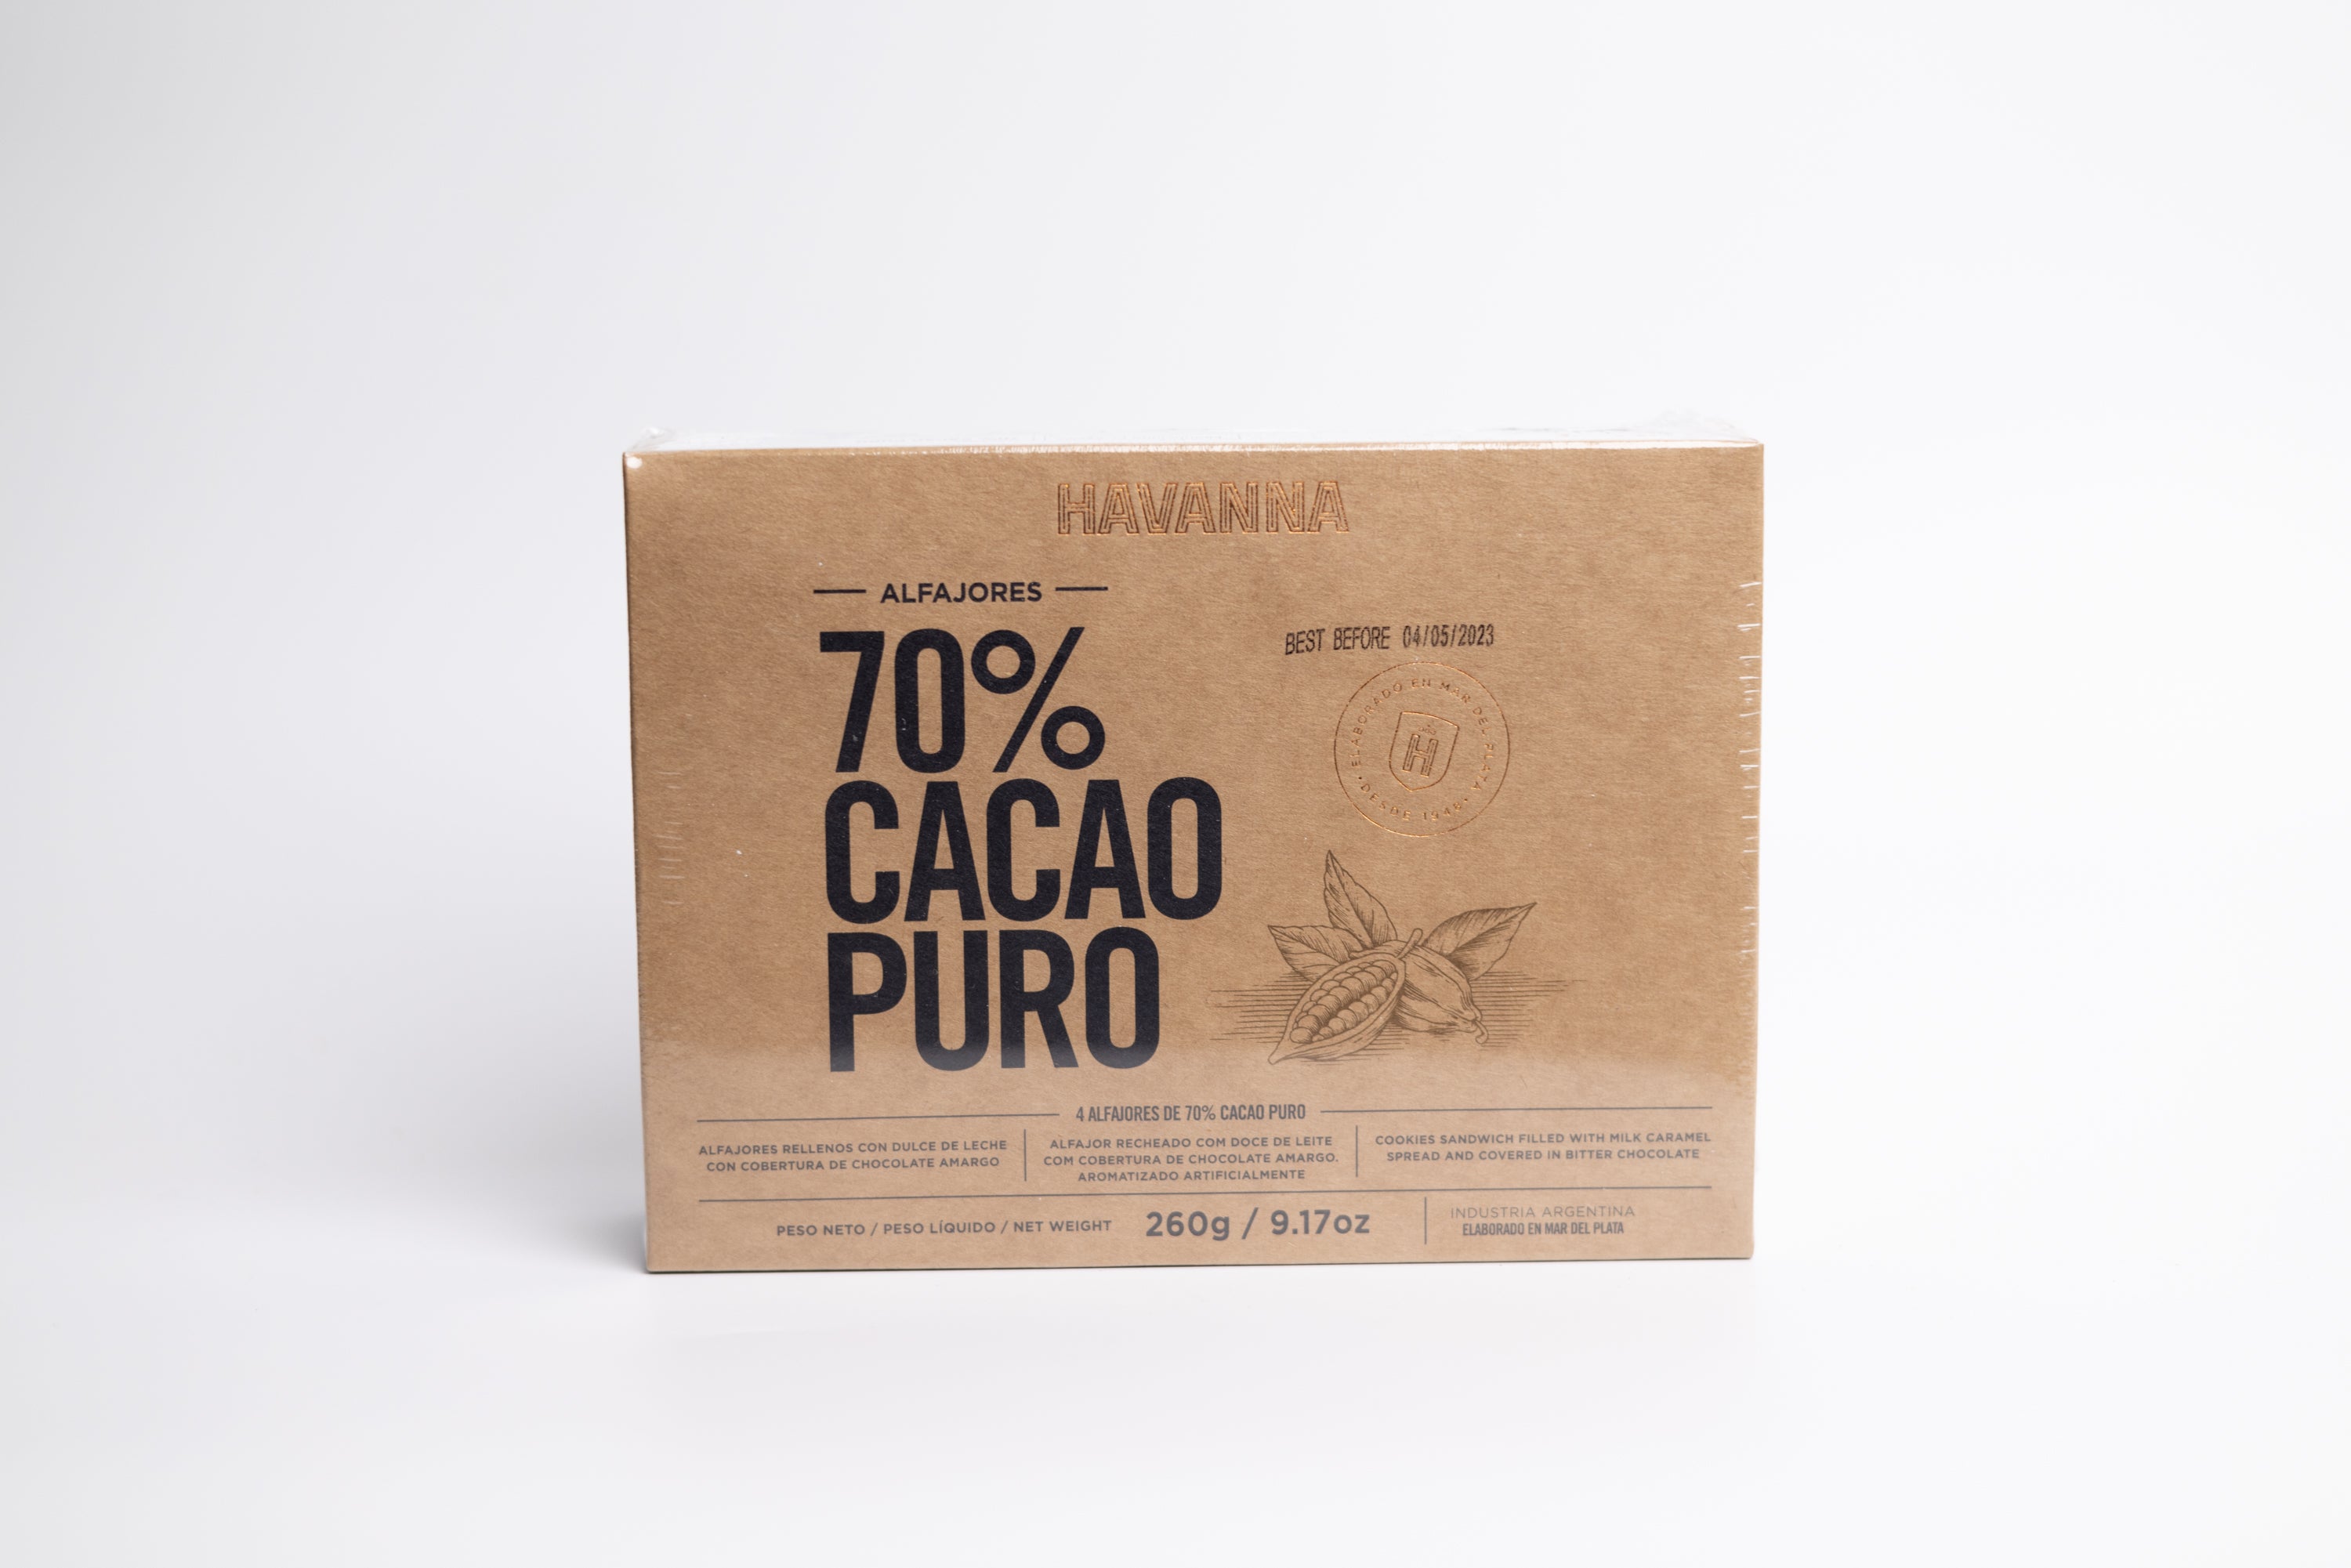 Havanna 70% Cacao Puro Alfajores 4ct